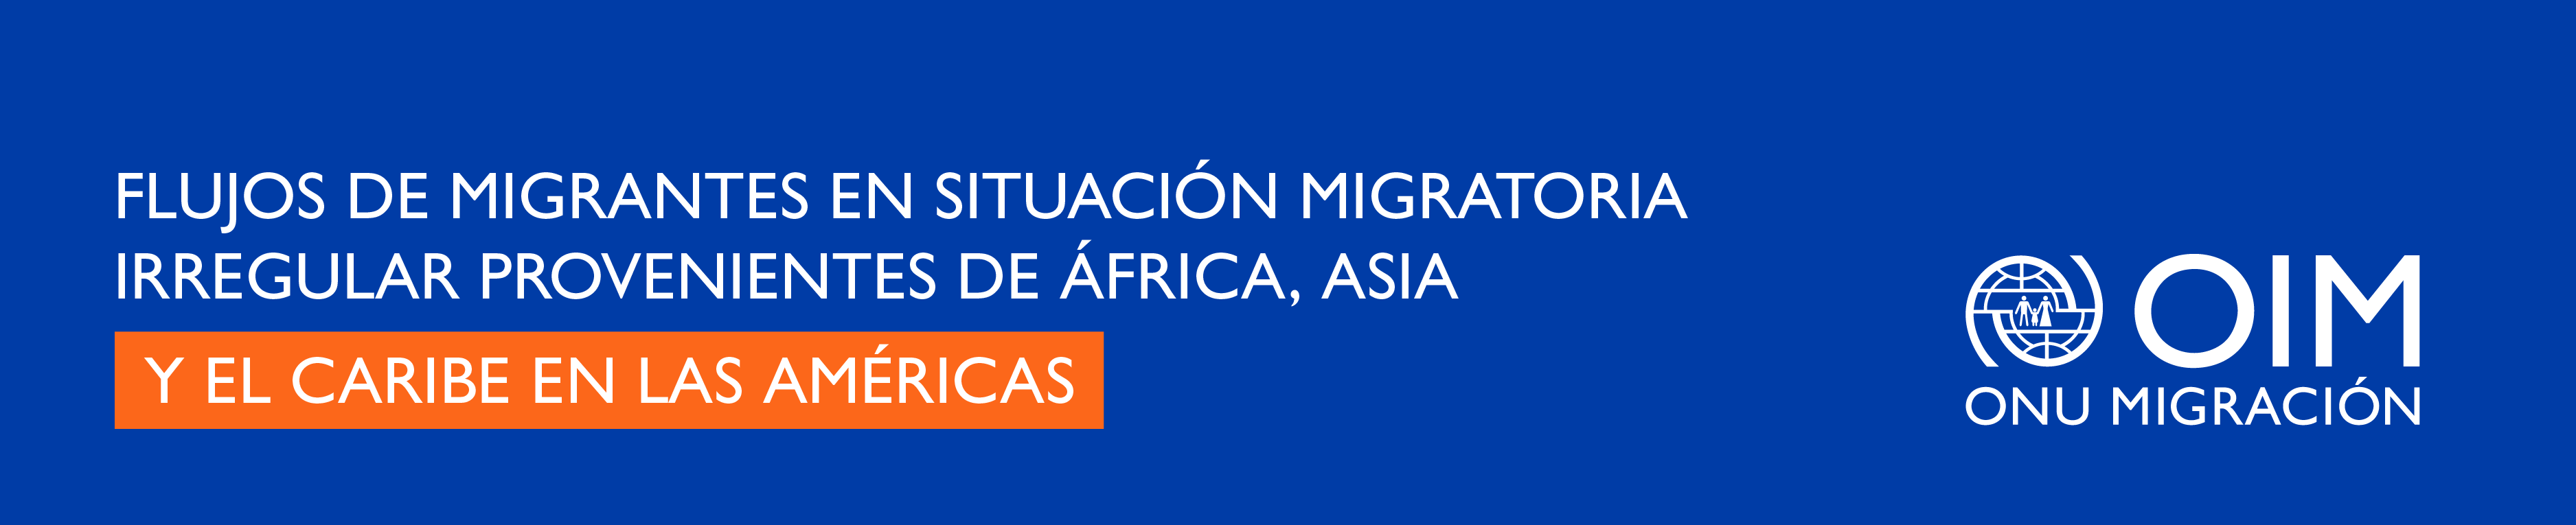 Flujos de migrantes en situación migratoria irregular provenientes de África, Asia y el Caribe en las Américas